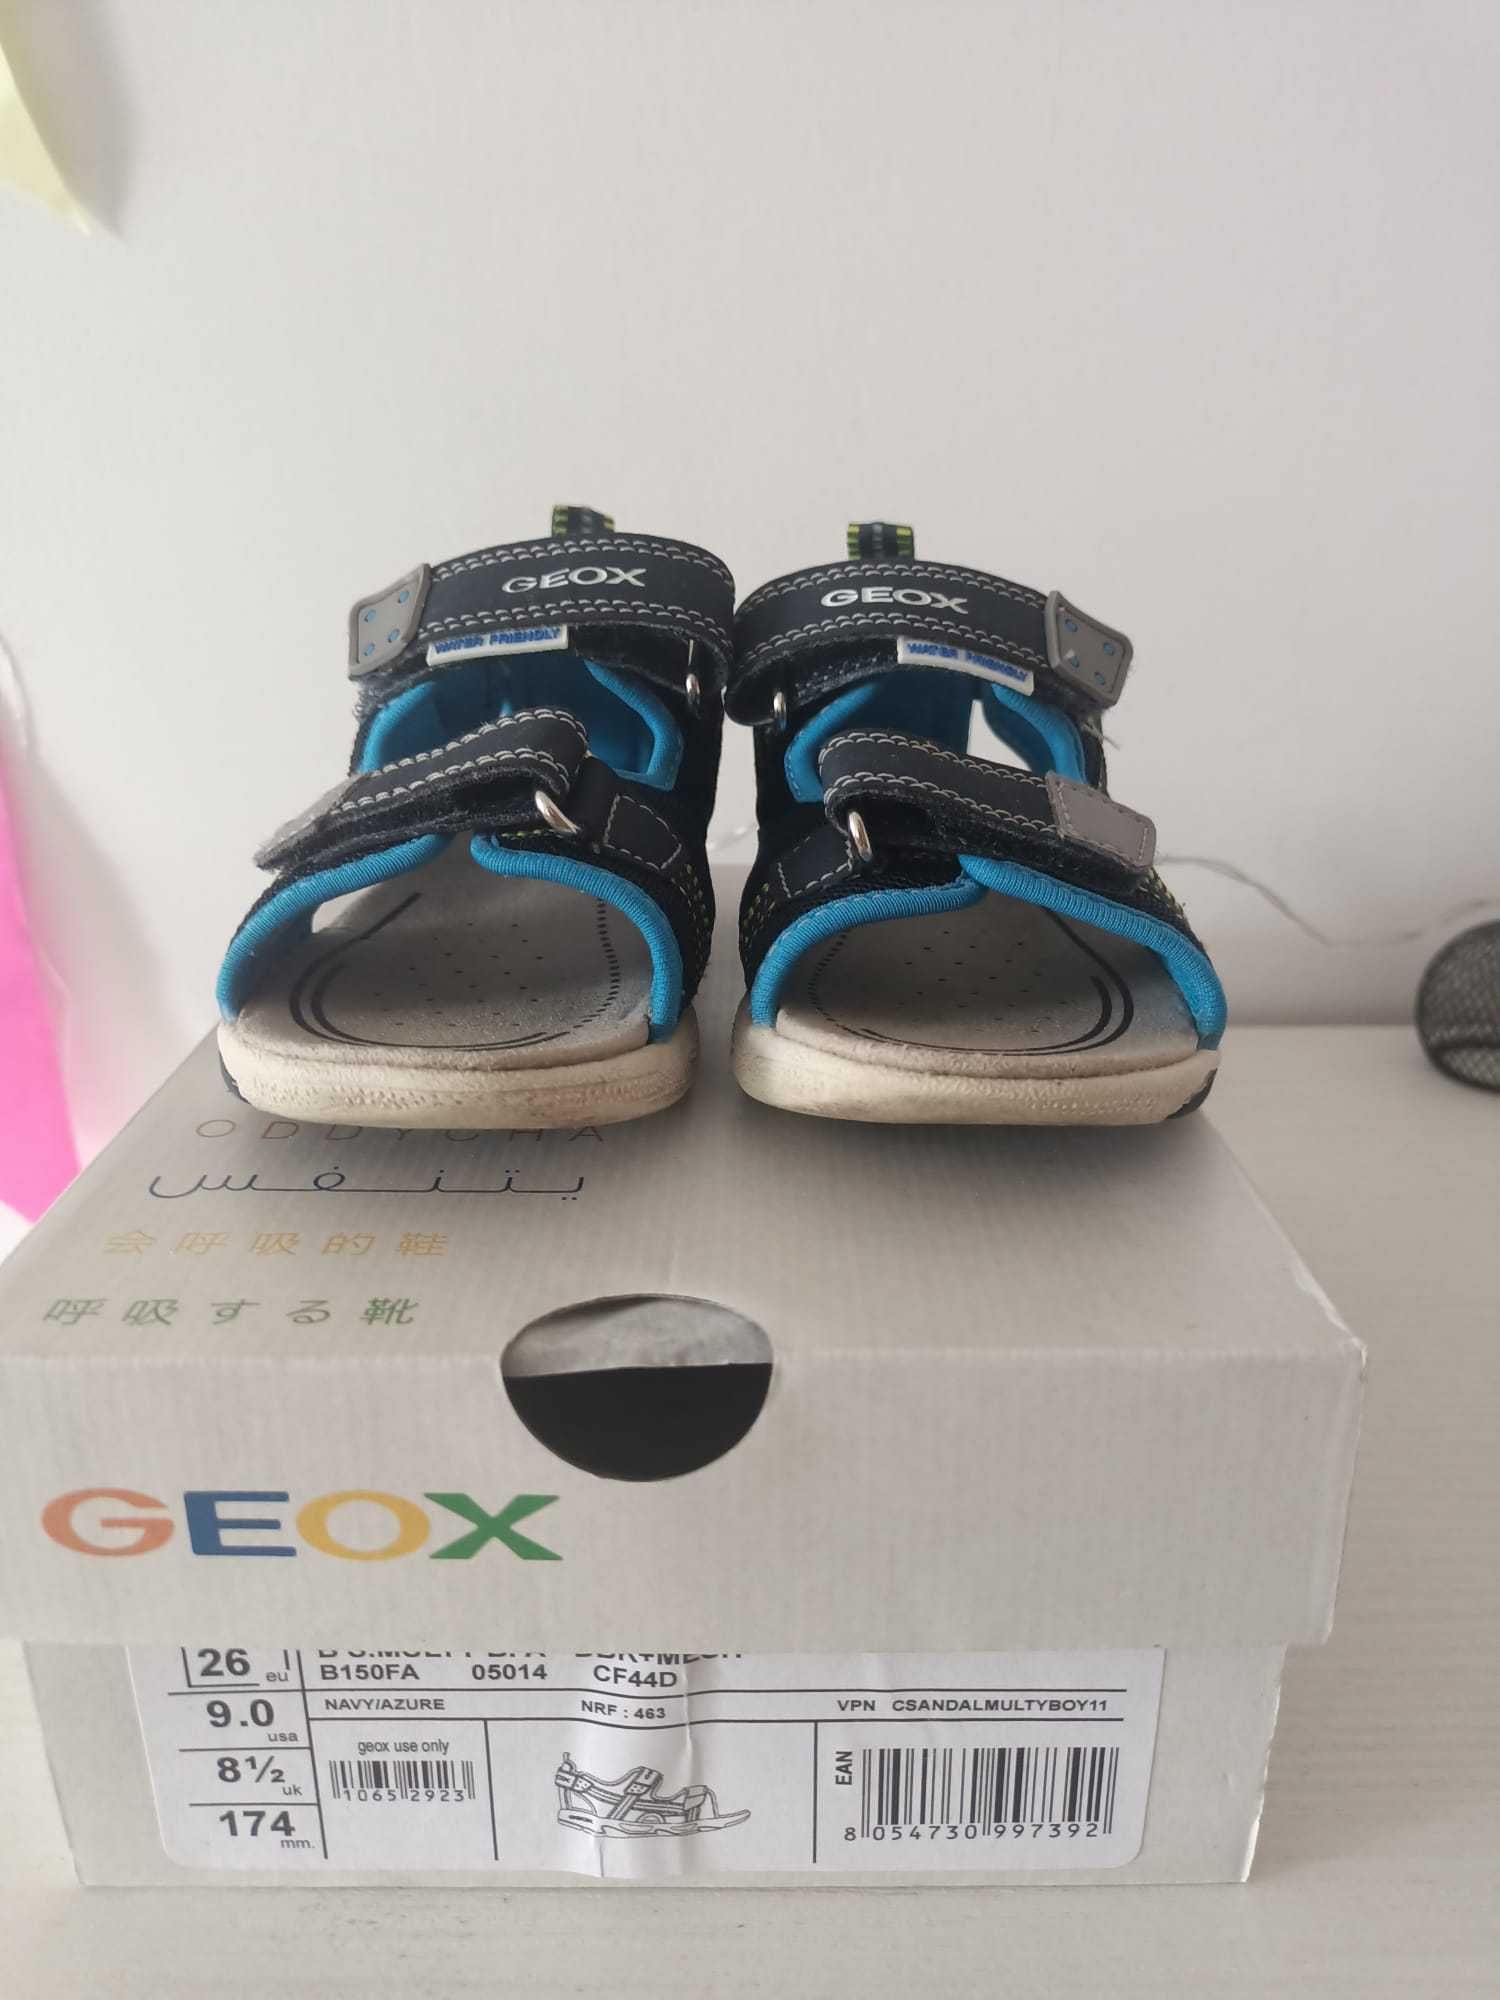 Sandale băieți Geox, mărimea 26, 17.4 cm lungime